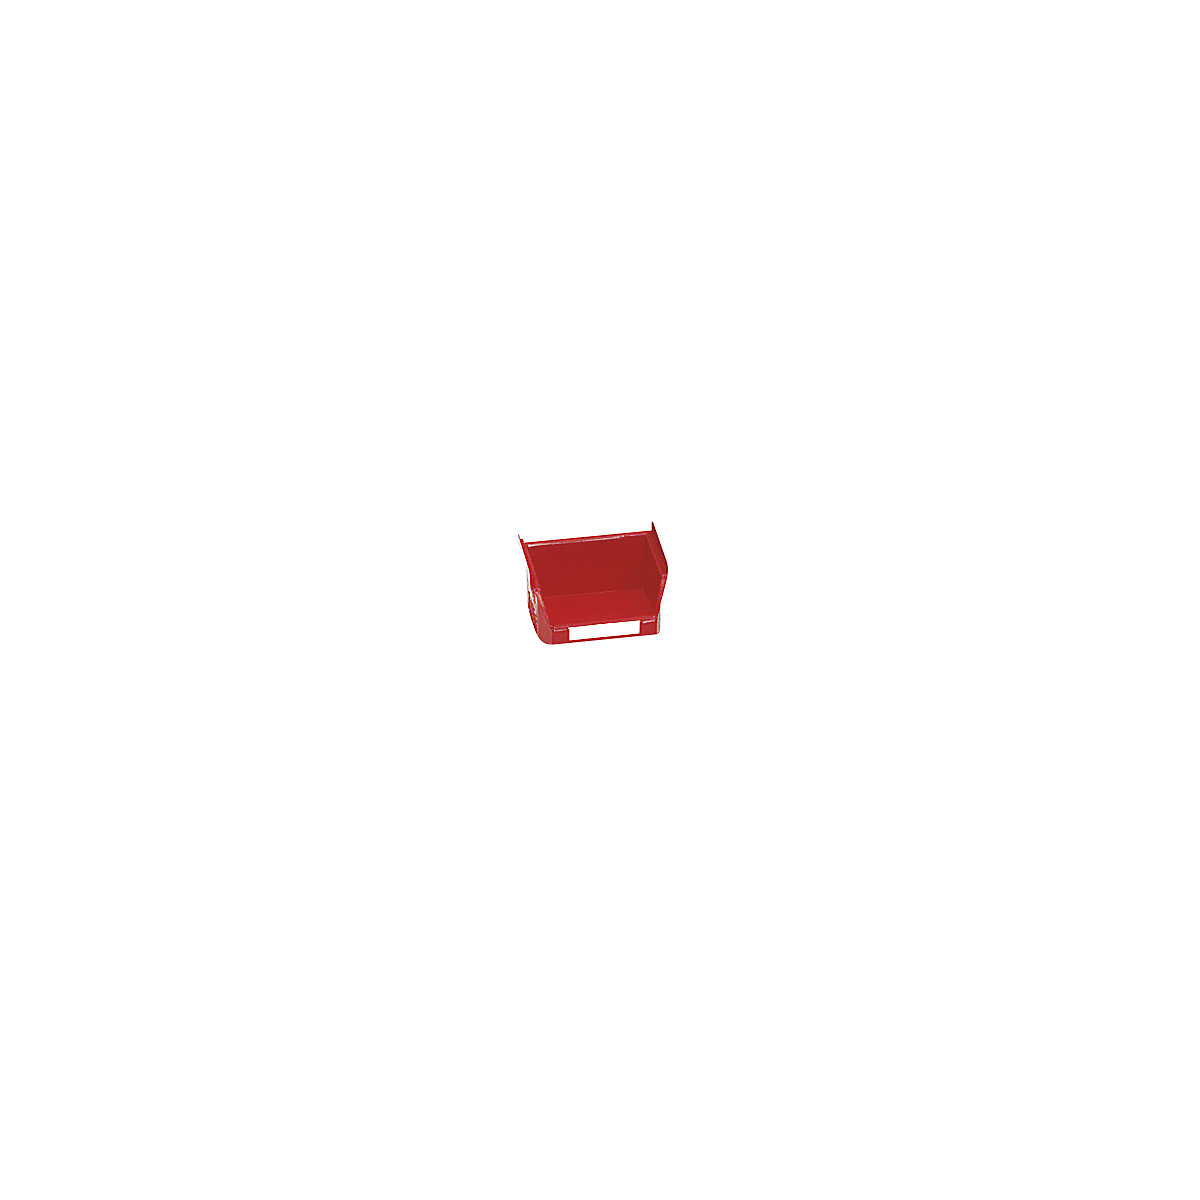 Magazijnbak van polyethyleen – mauser, l x b x h = 85 x 100 x 50 mm, rood, VE à 50 st.-8